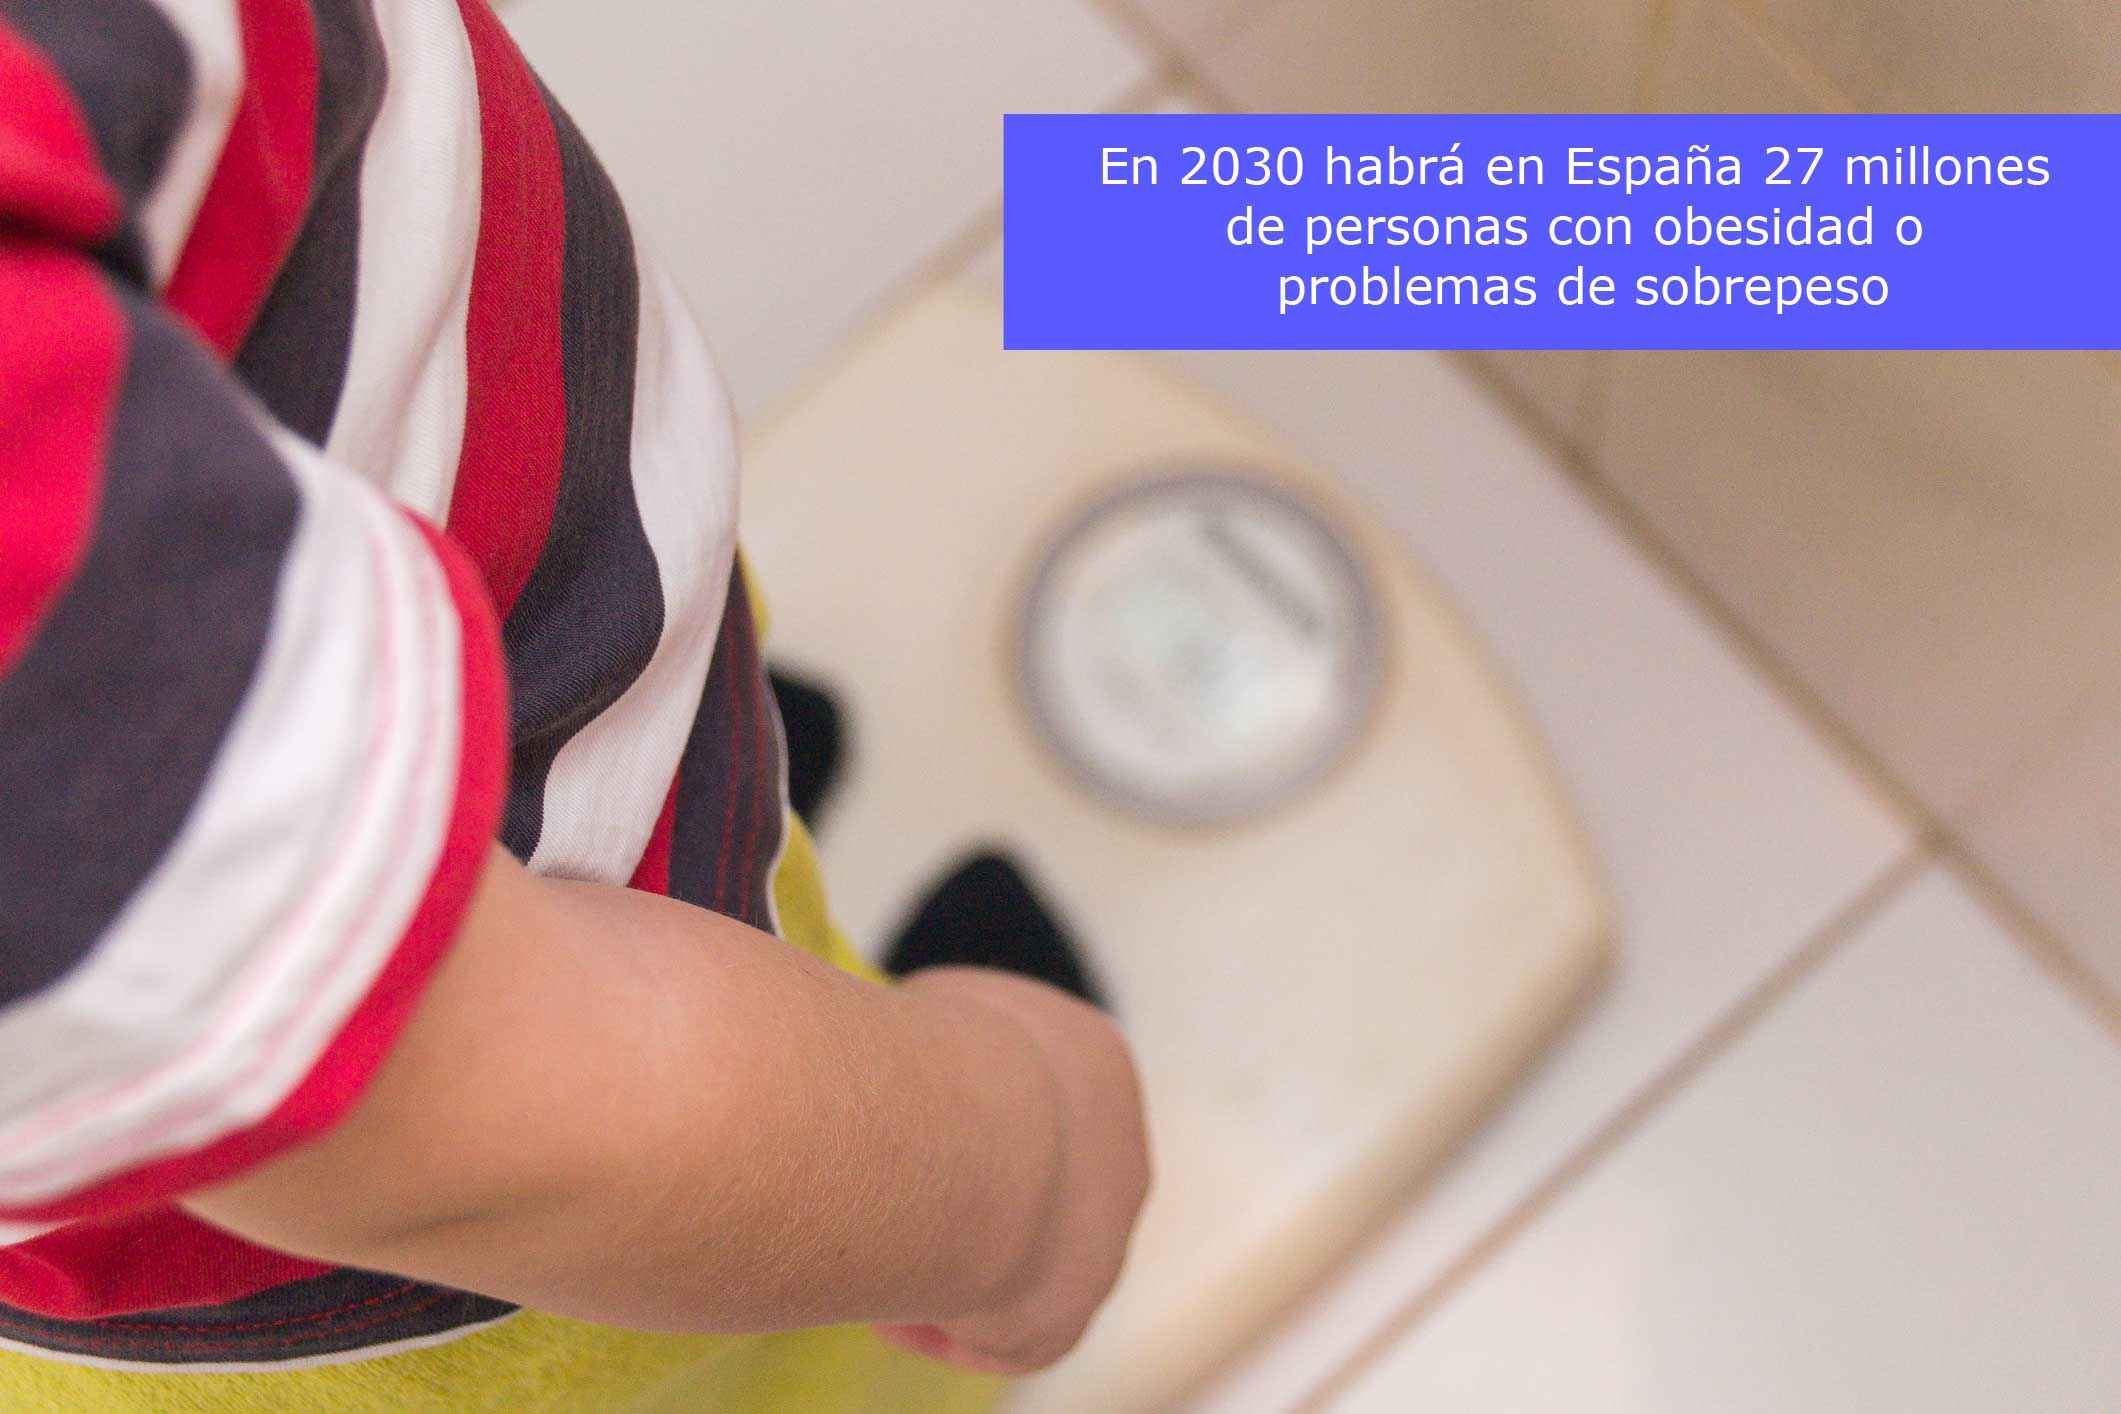 En 2030 habrá 27 millones de españoles con sobrepeso